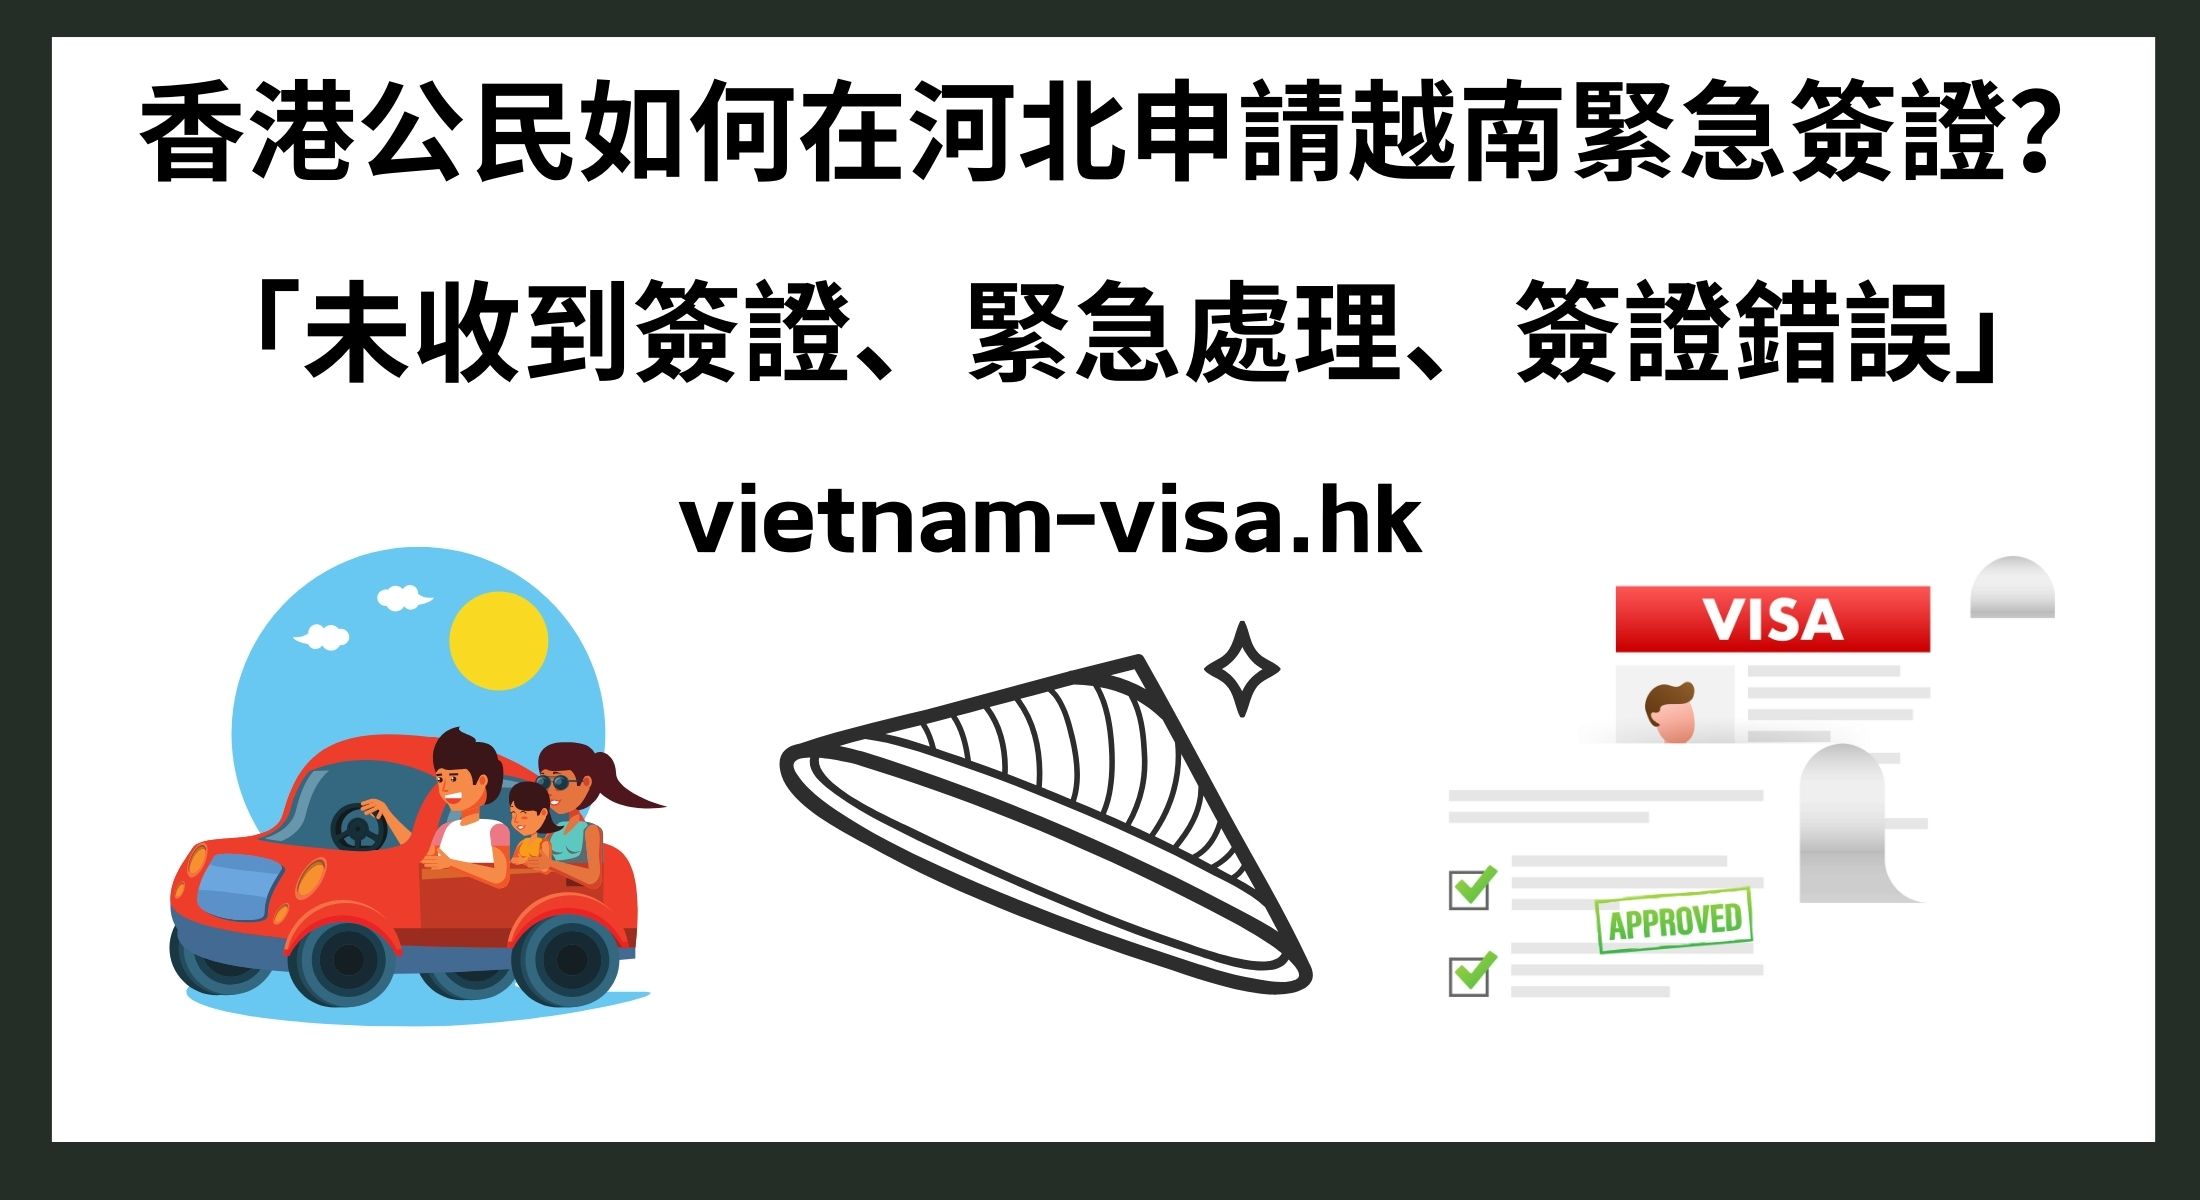 香港公民如何在河北申請越南緊急簽證？ 「未收到簽證、緊急處理、簽證錯誤」